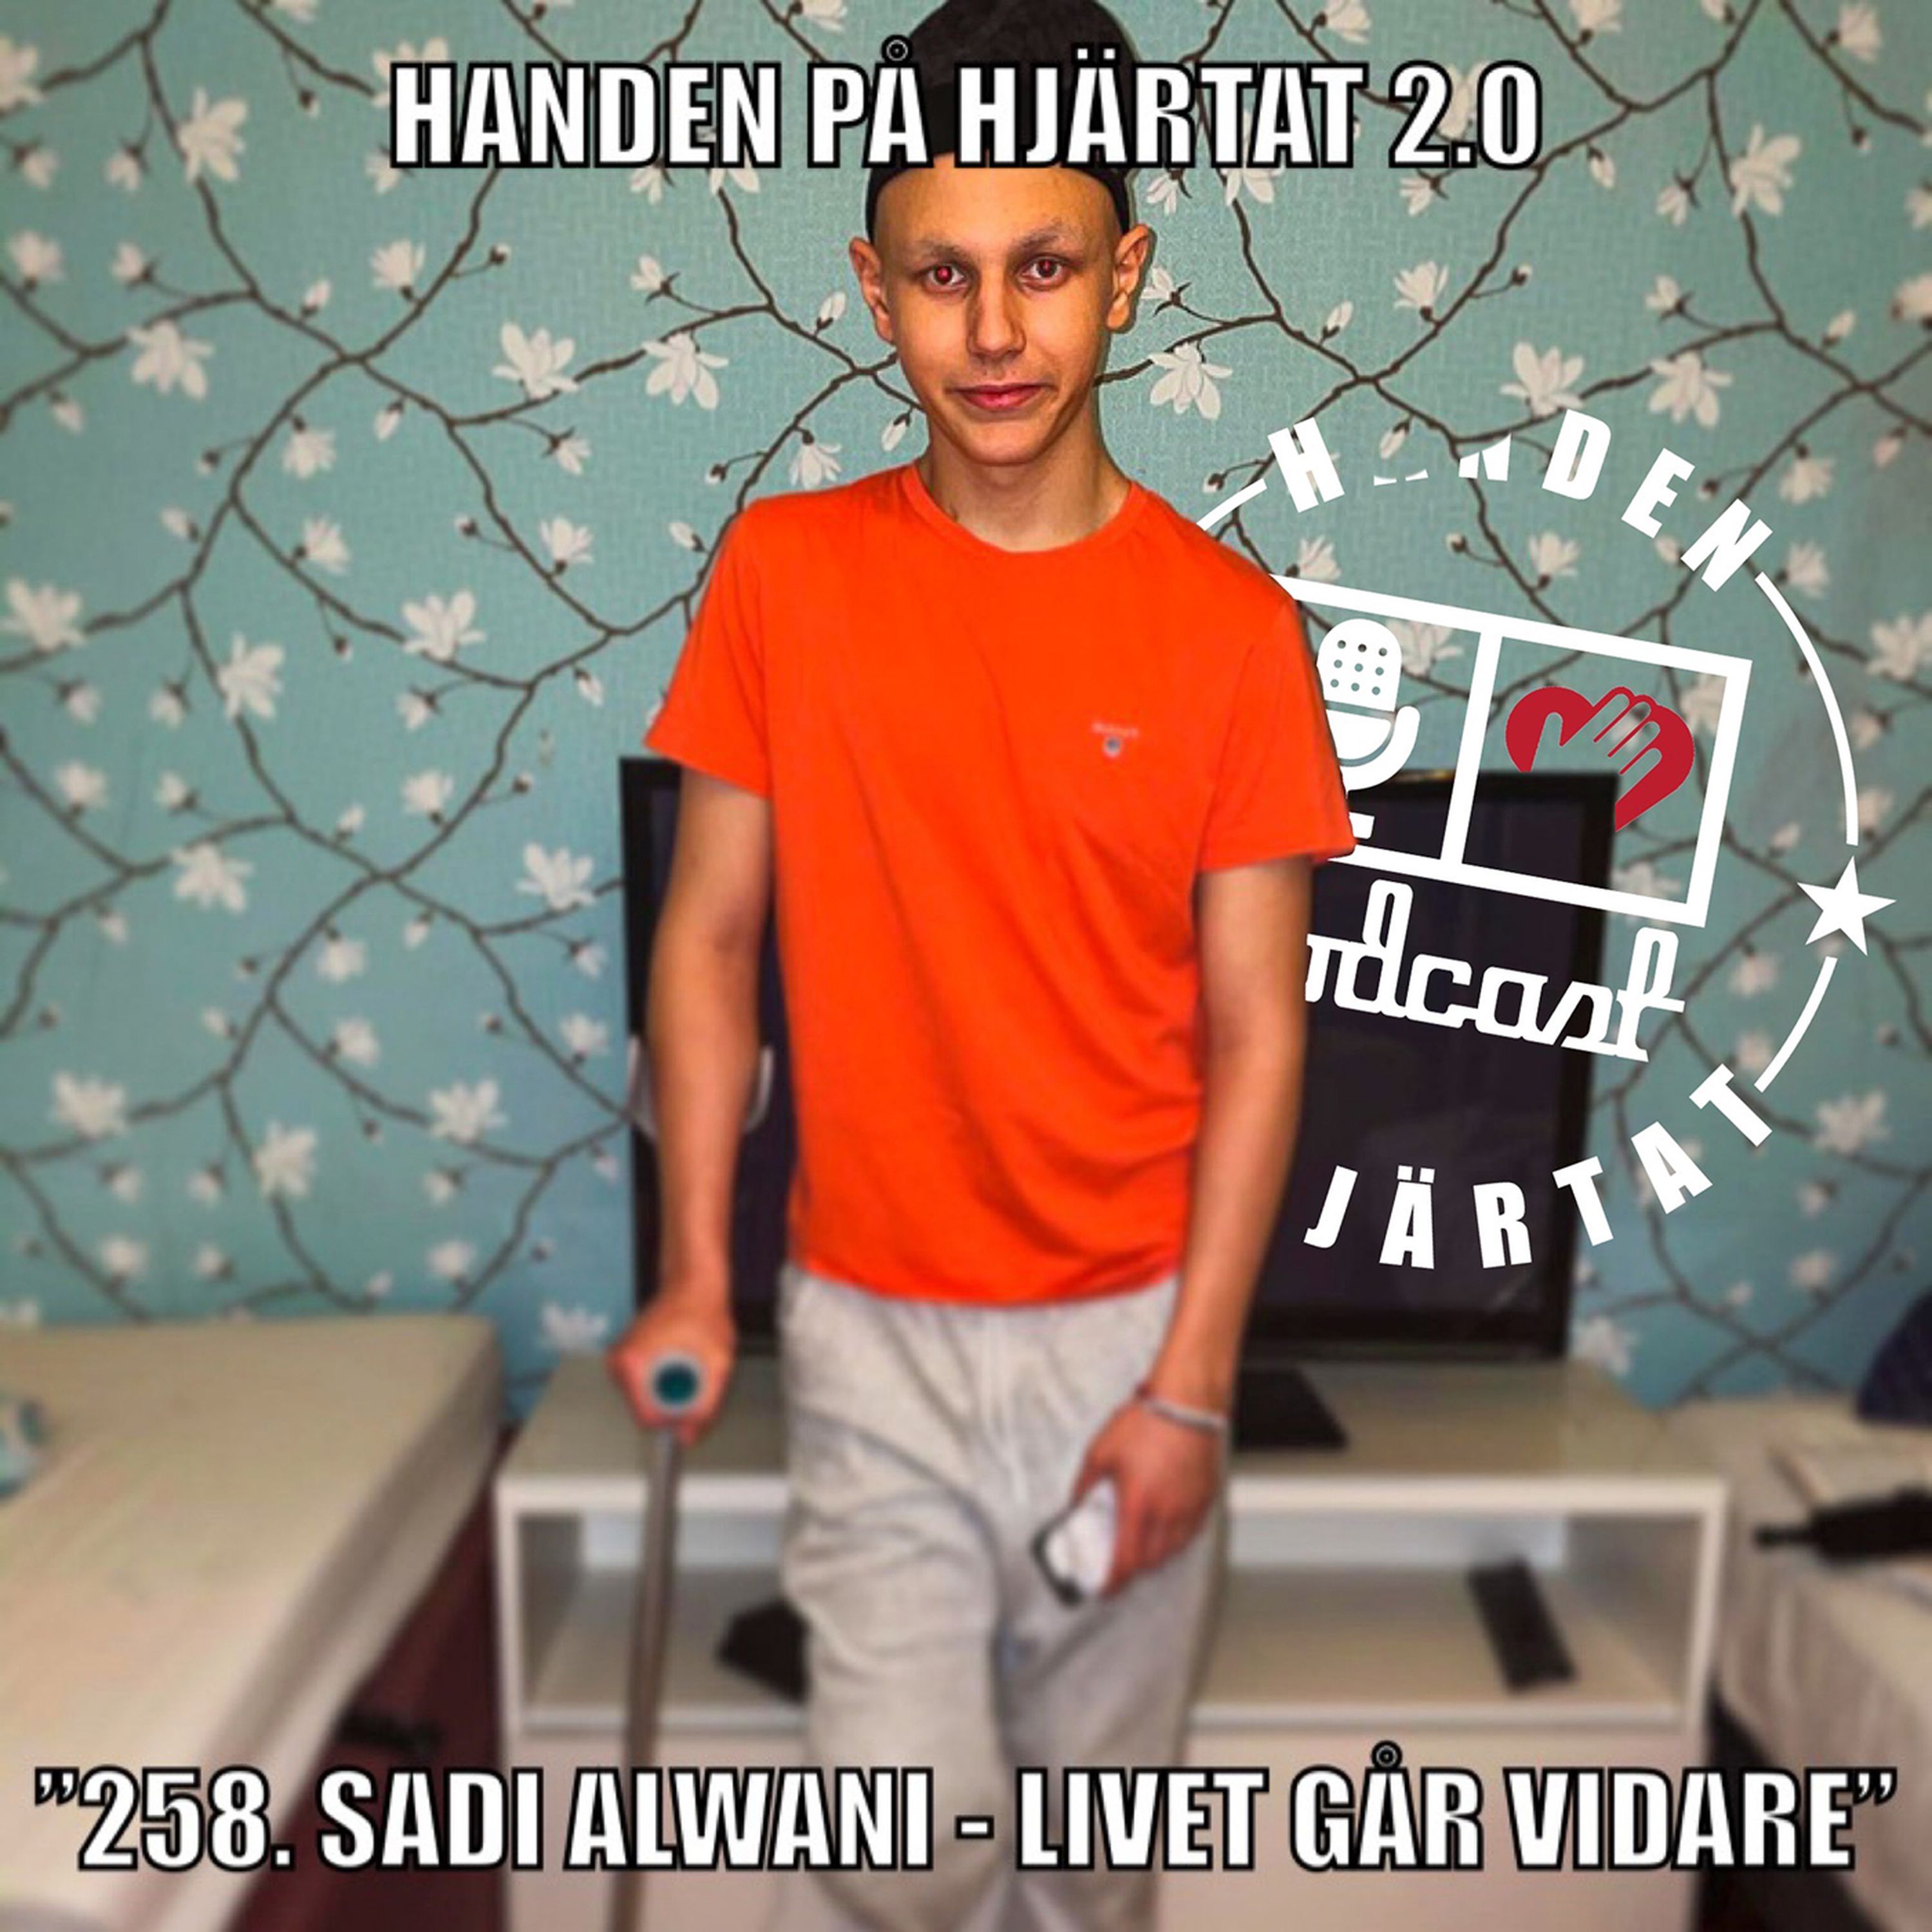 "258. Sadi Alwani - Livet går vidare"